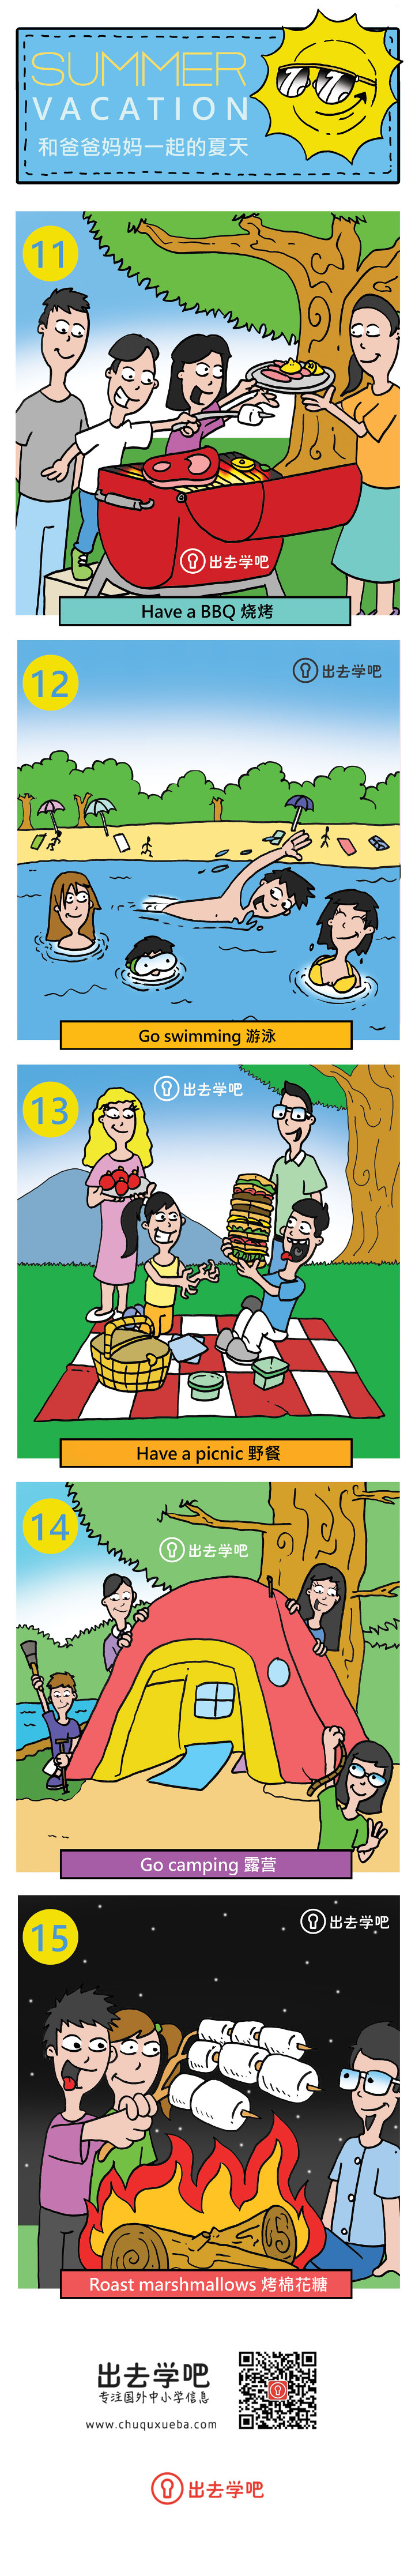 孩子们在暑假可以和爸爸妈妈一起参与的5个活动：烧烤、游泳、野餐、露营、烤棉花糖